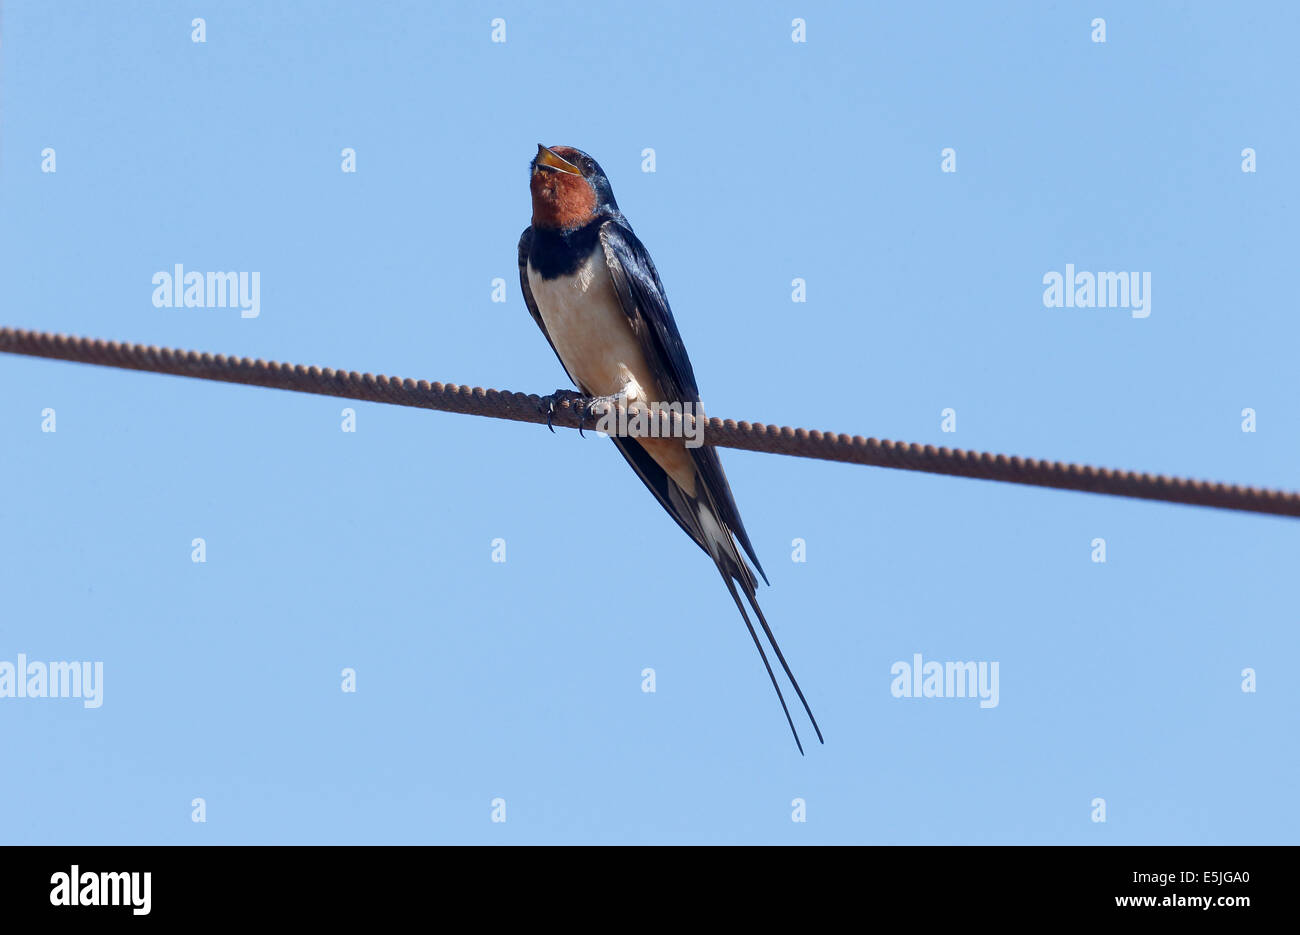 Hirondelle, Hirundo rustica, seul oiseau sur le fil, Cornwall, Juin 2014 Banque D'Images